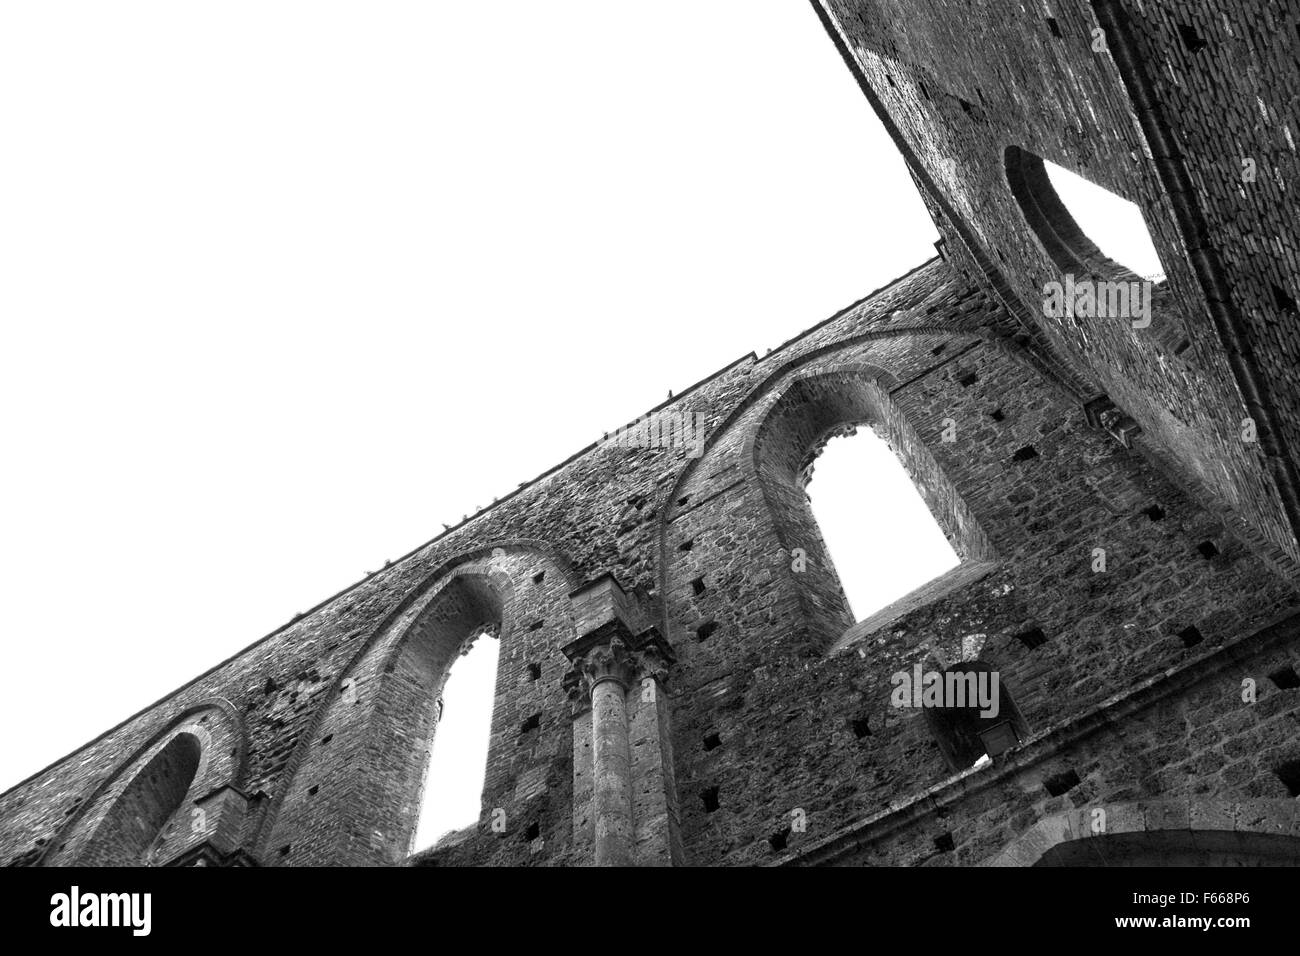 SAN GALGANO, ITALY: Abandoned Old Abbey in Tuscany Stock Photo